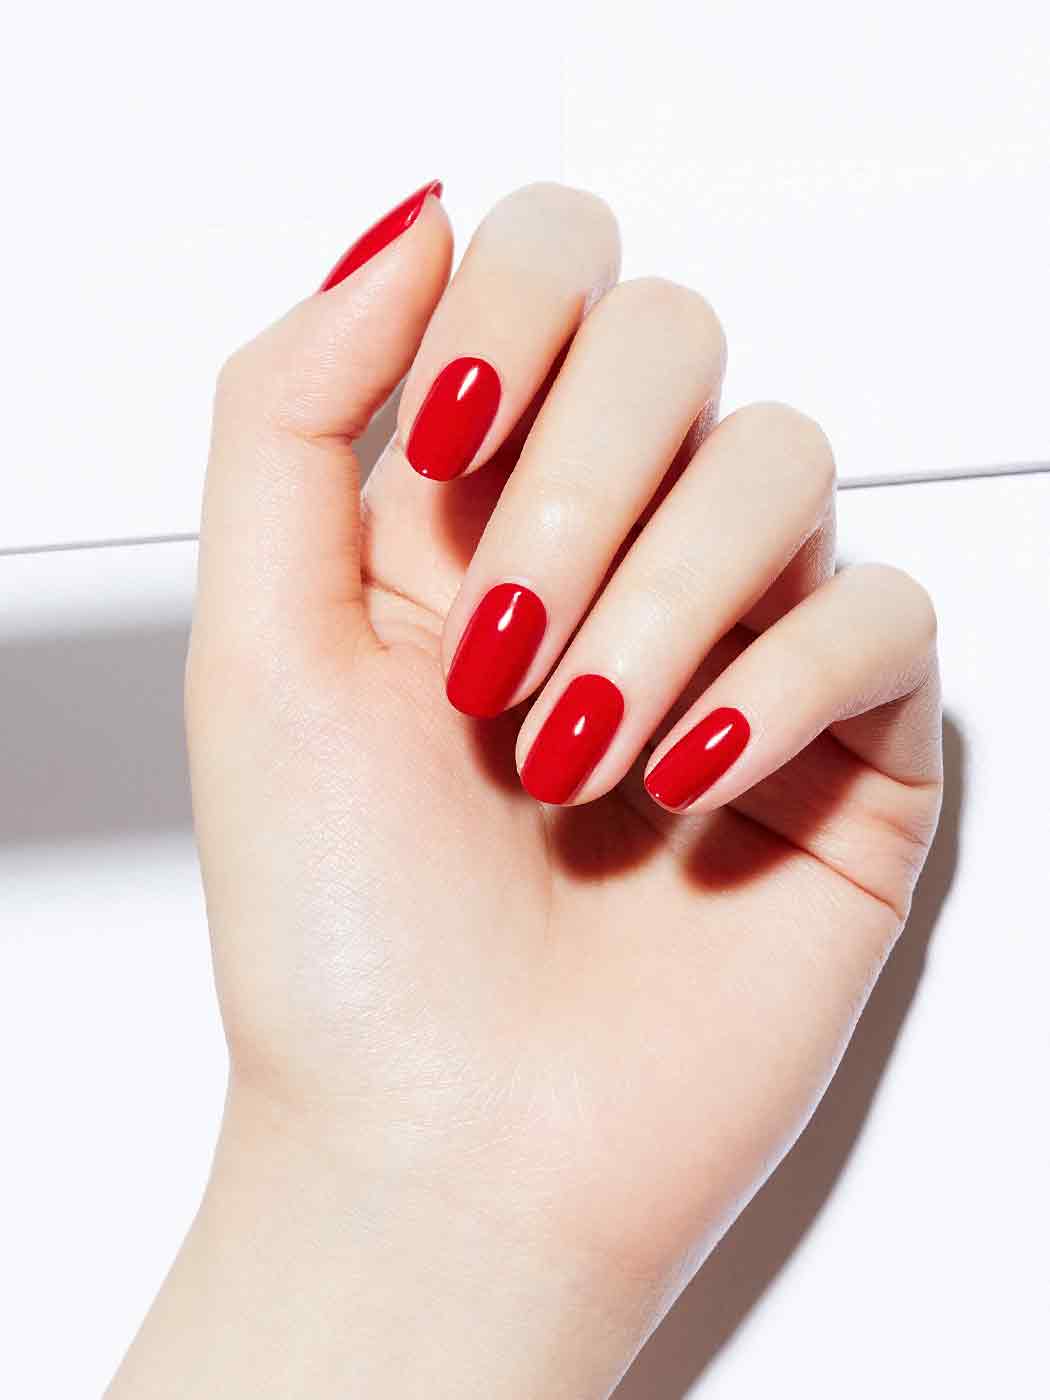 Chanel Mediterranee nail polish review